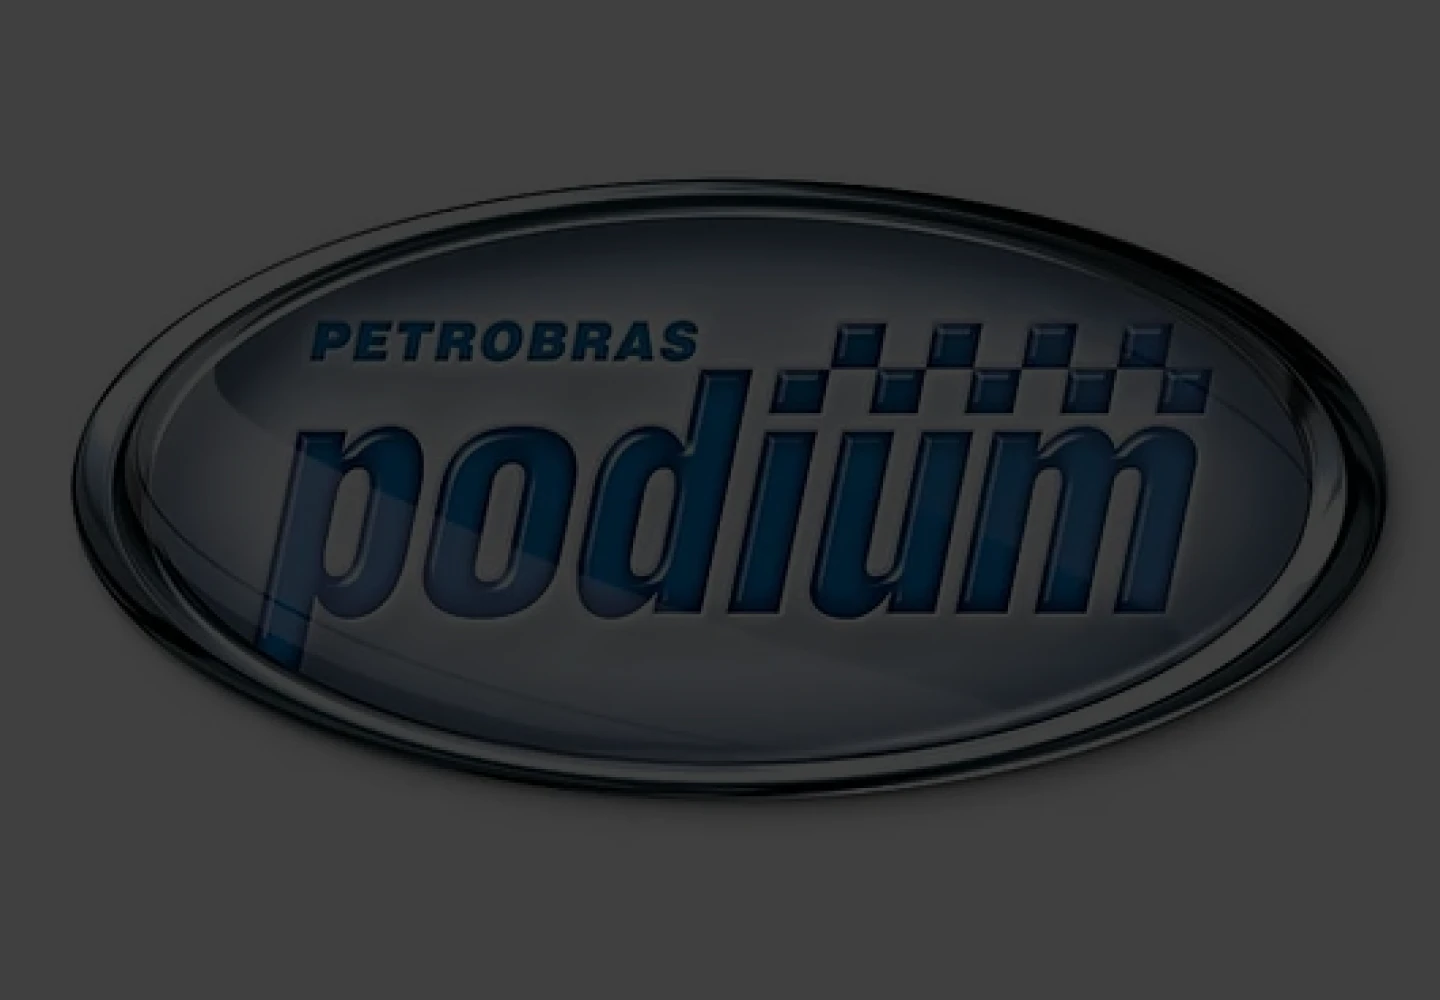 Logotipo da linha Petrobras Podium.